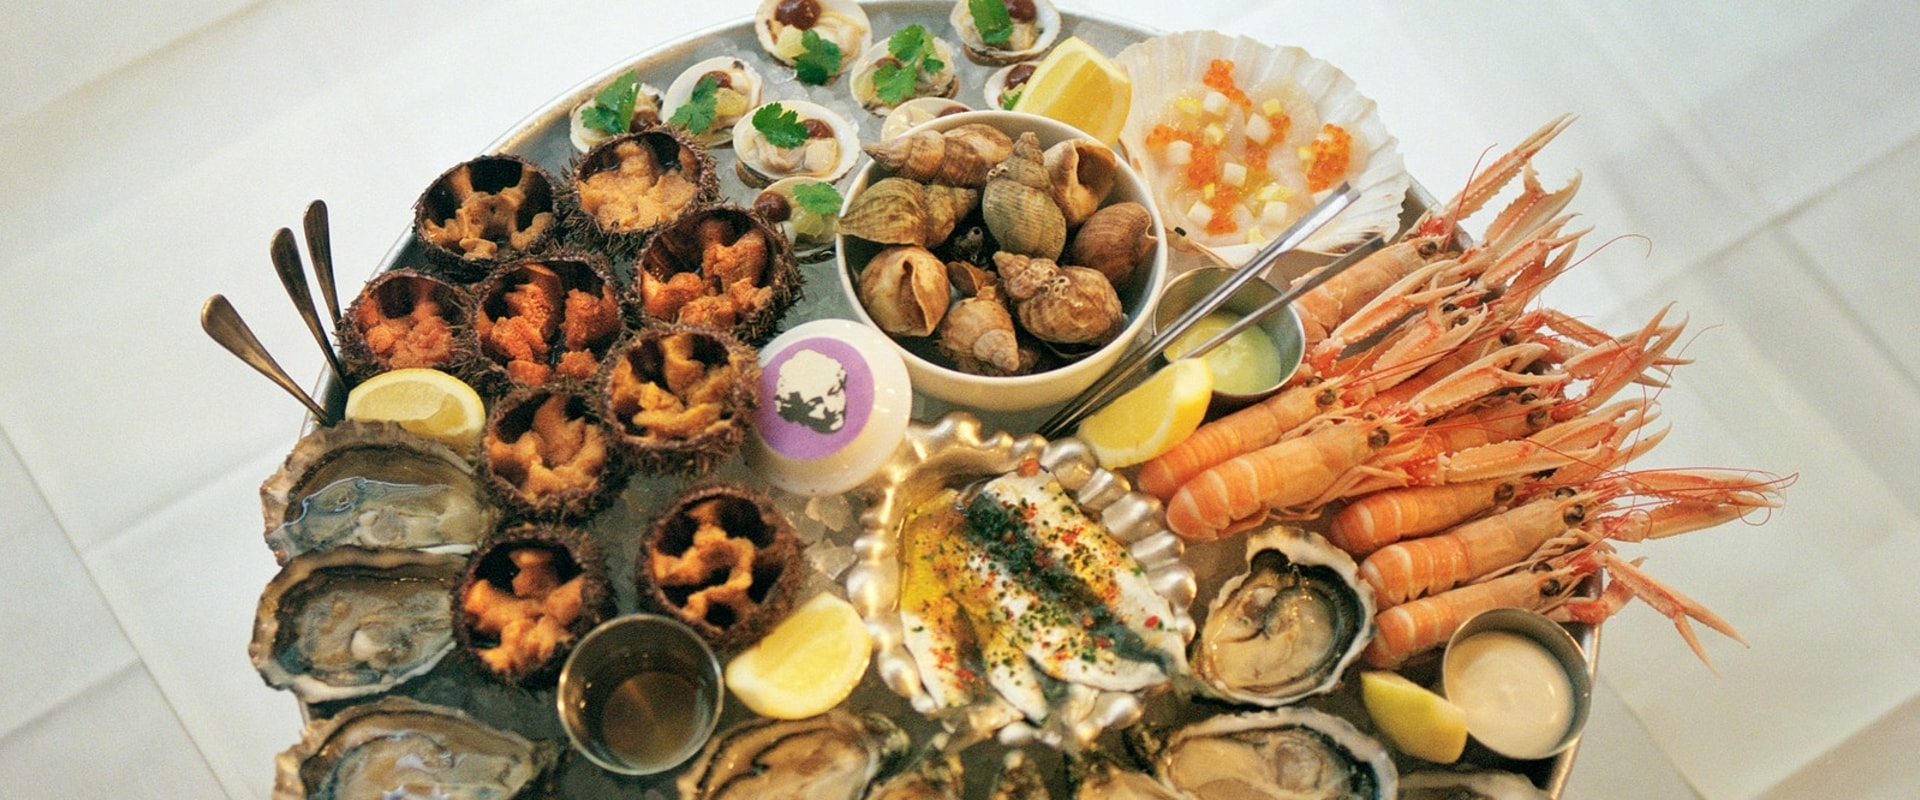 Découvrez les restaurants de fruits de mer de Paris